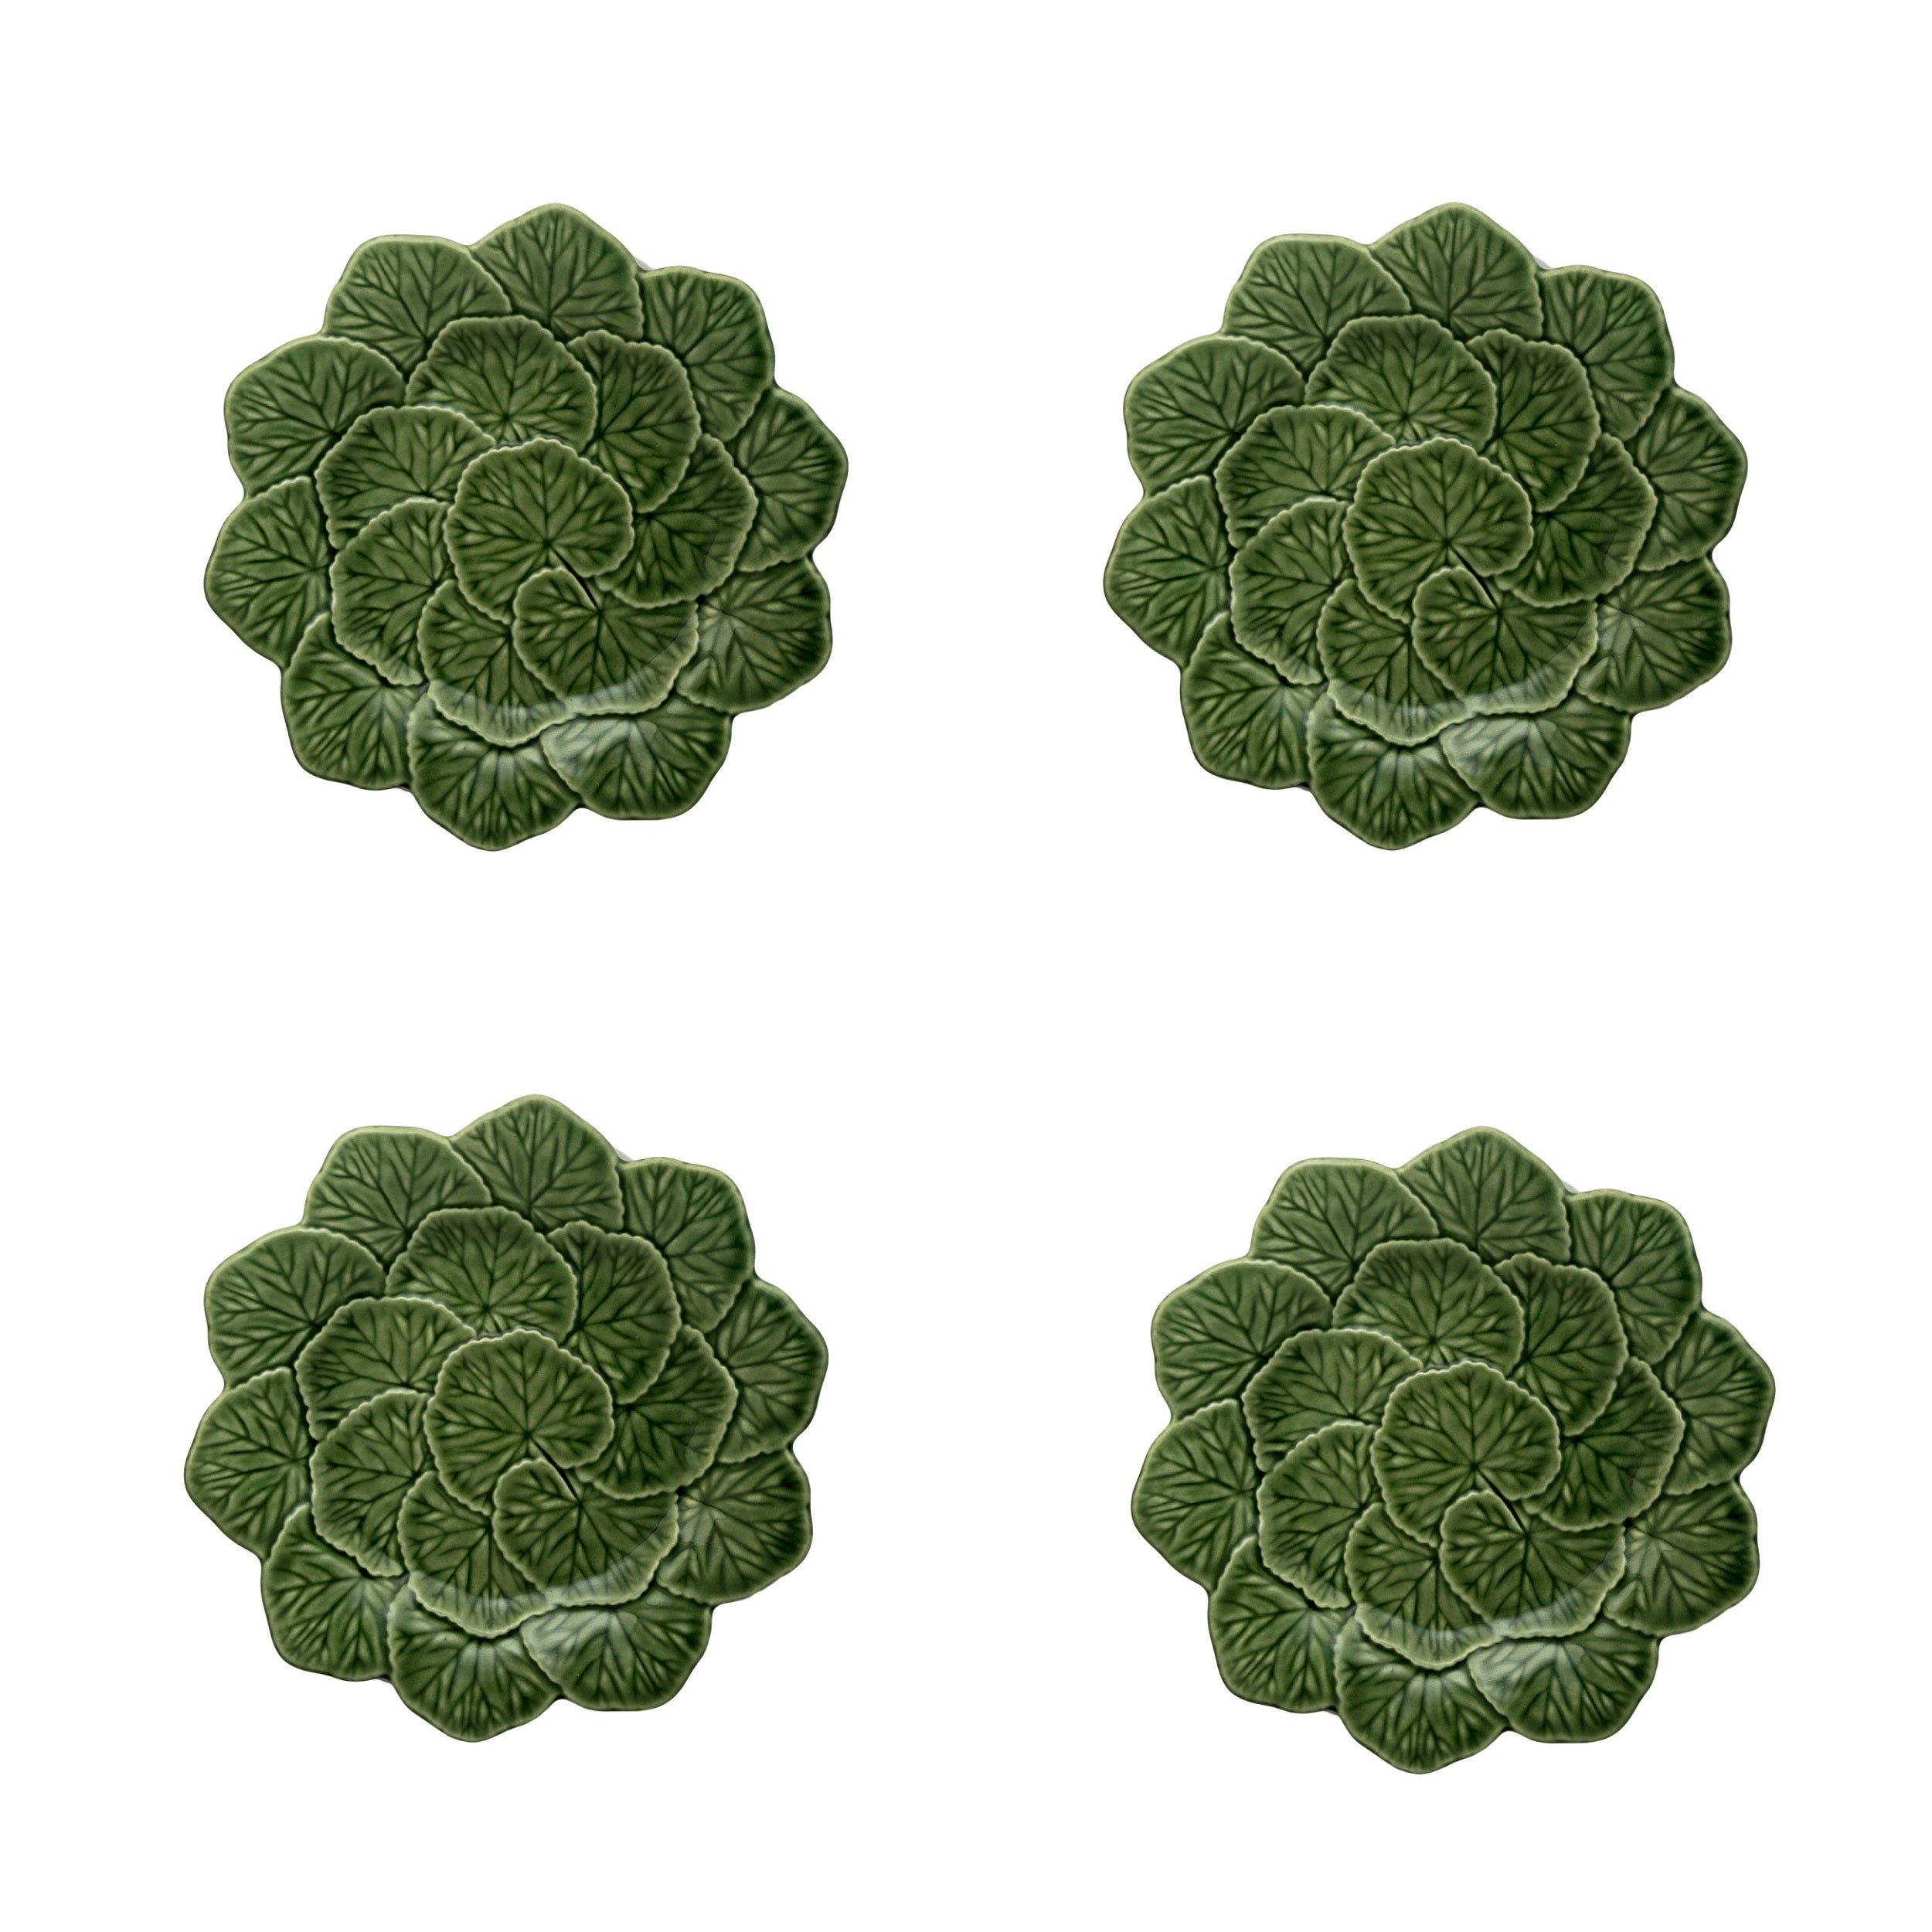 Bordallo Pinheiro Sardinheira Set of 4 Geranium Fruit Plates, 22 cm